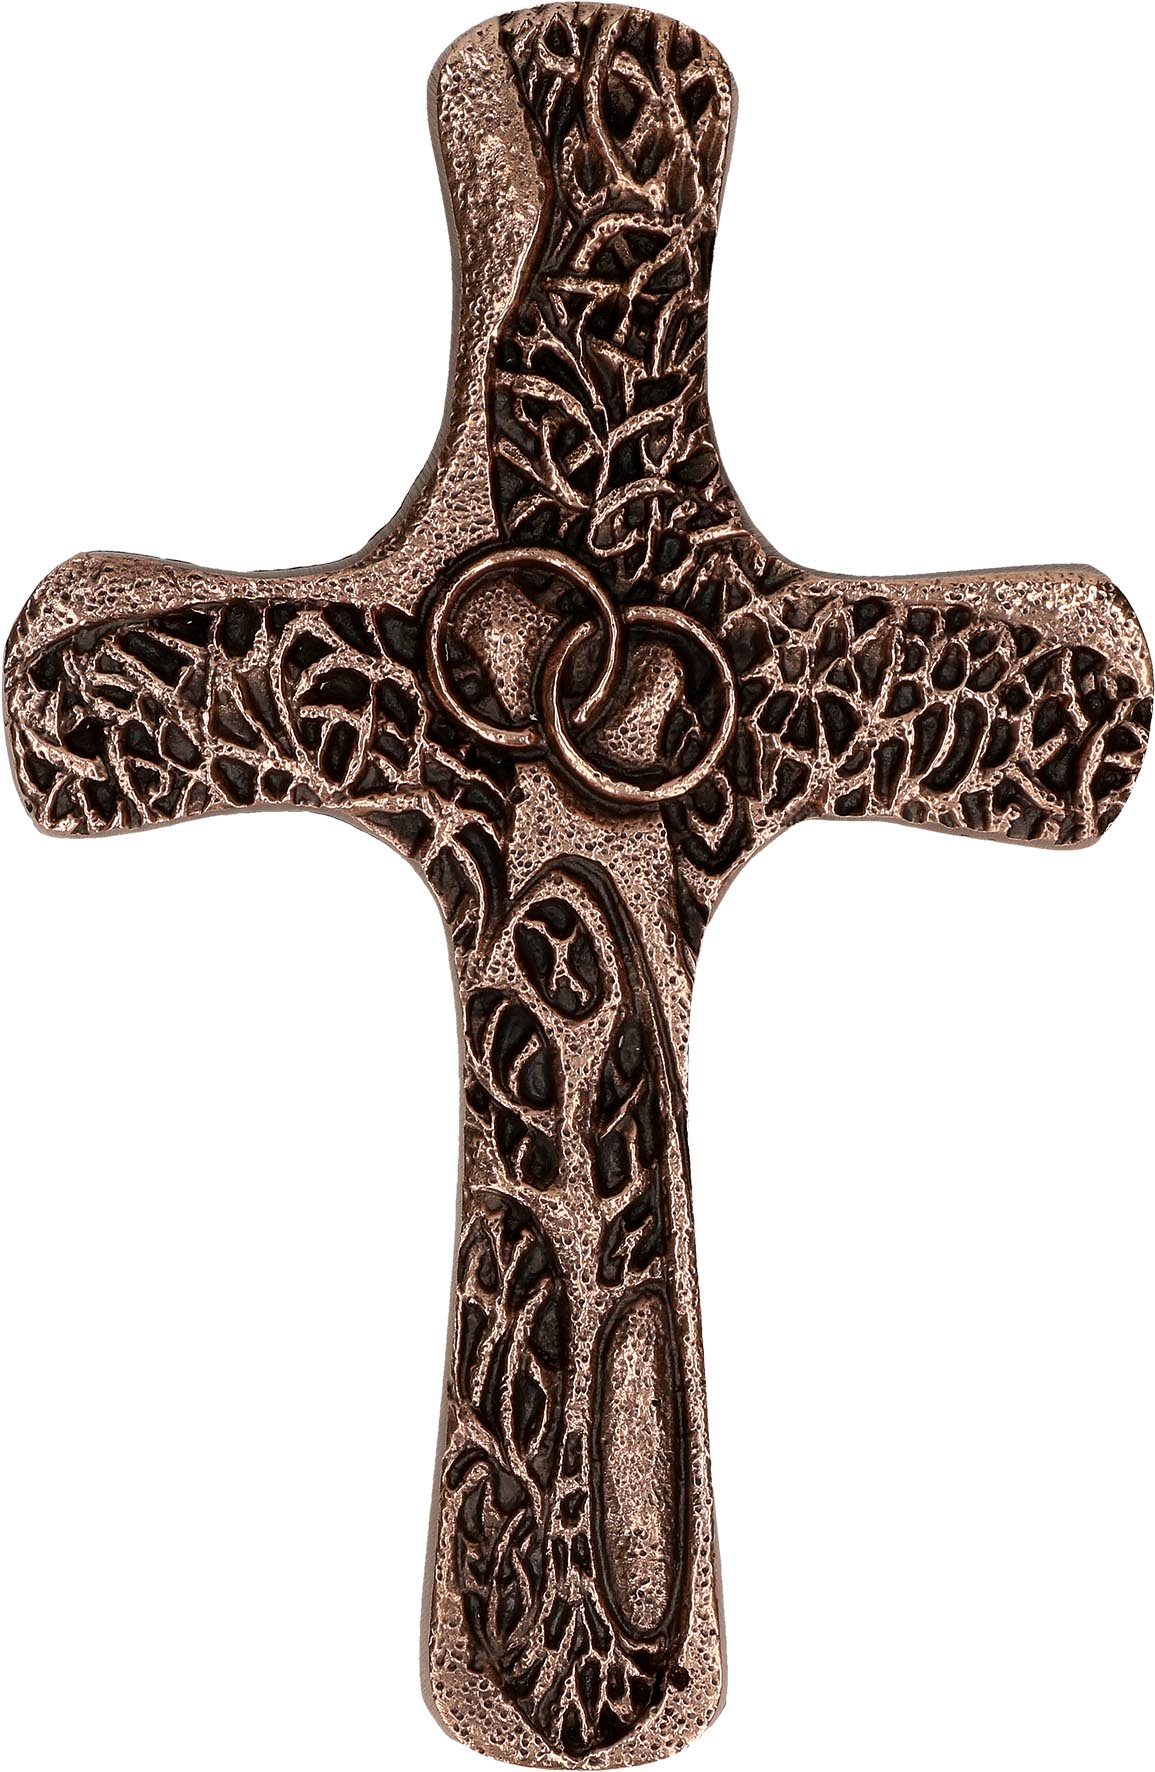 Ehekreuz aus Bronze - Segen sei mit euch